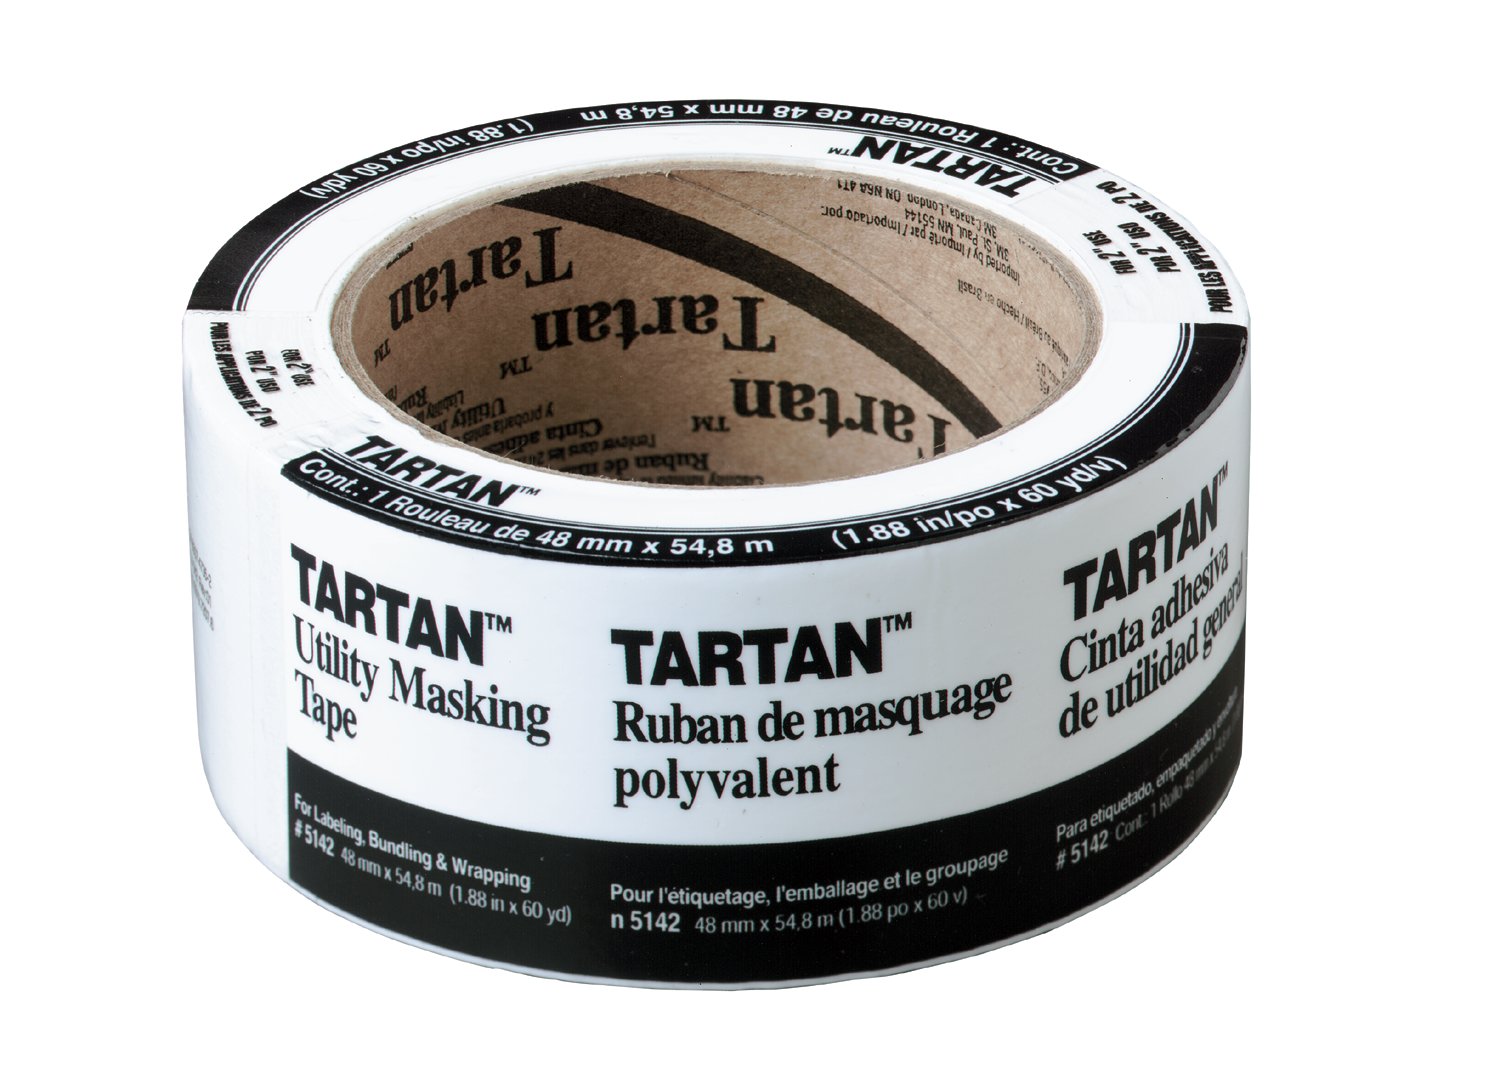 7000127115 - Tartan Masking Tape 5142-48A, 1.88 in x 60.1 yd (48 mm x 55 m), 24
rls/cs, 1 Roll/Pack